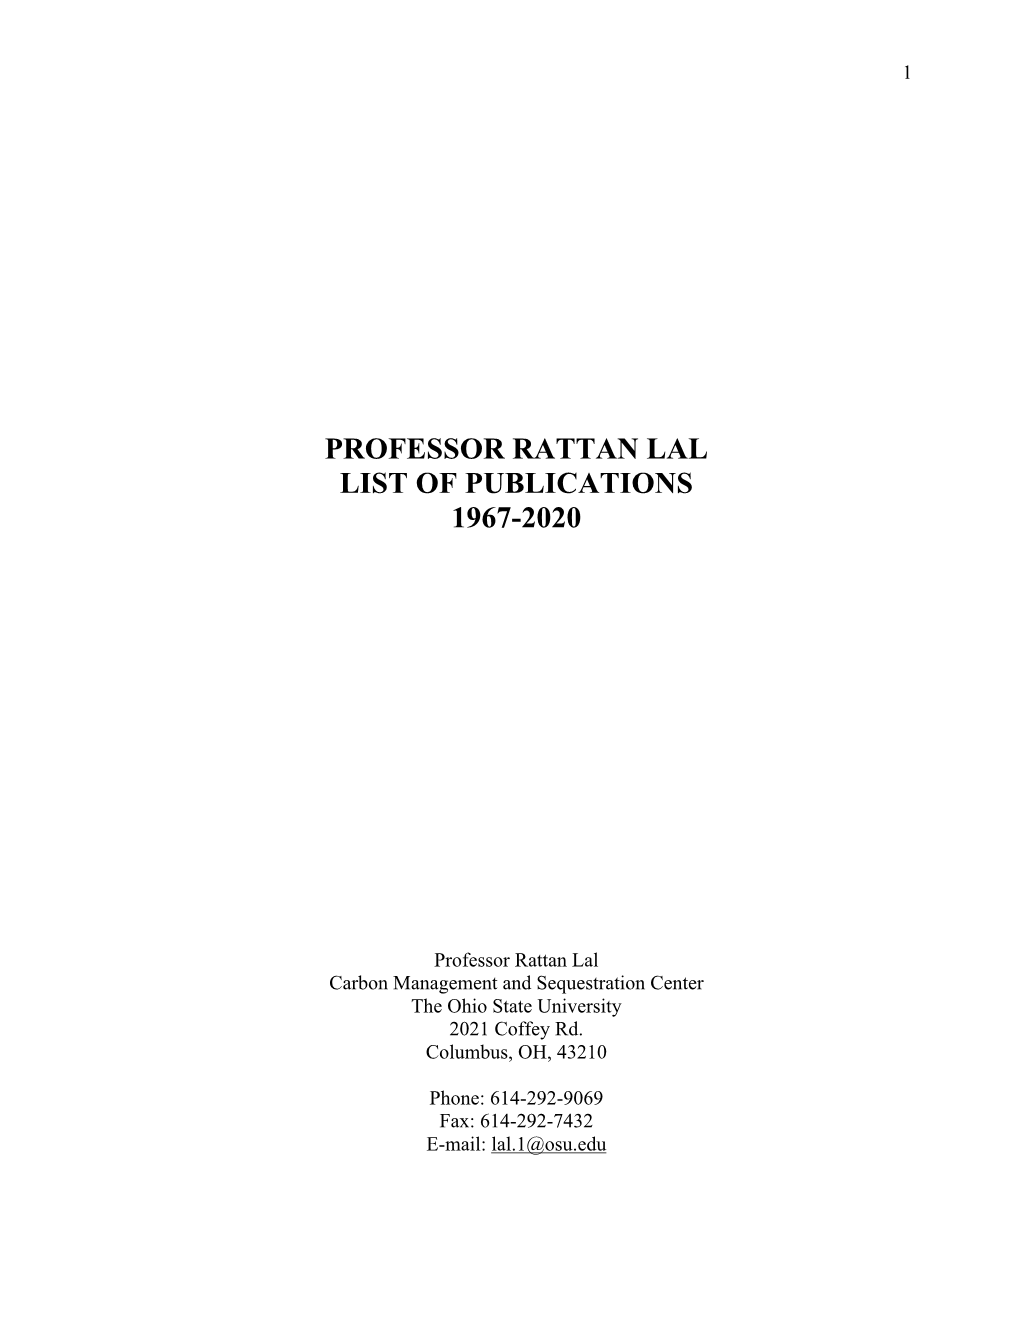 Professor Rattan Lal List of Publications 1967-2020